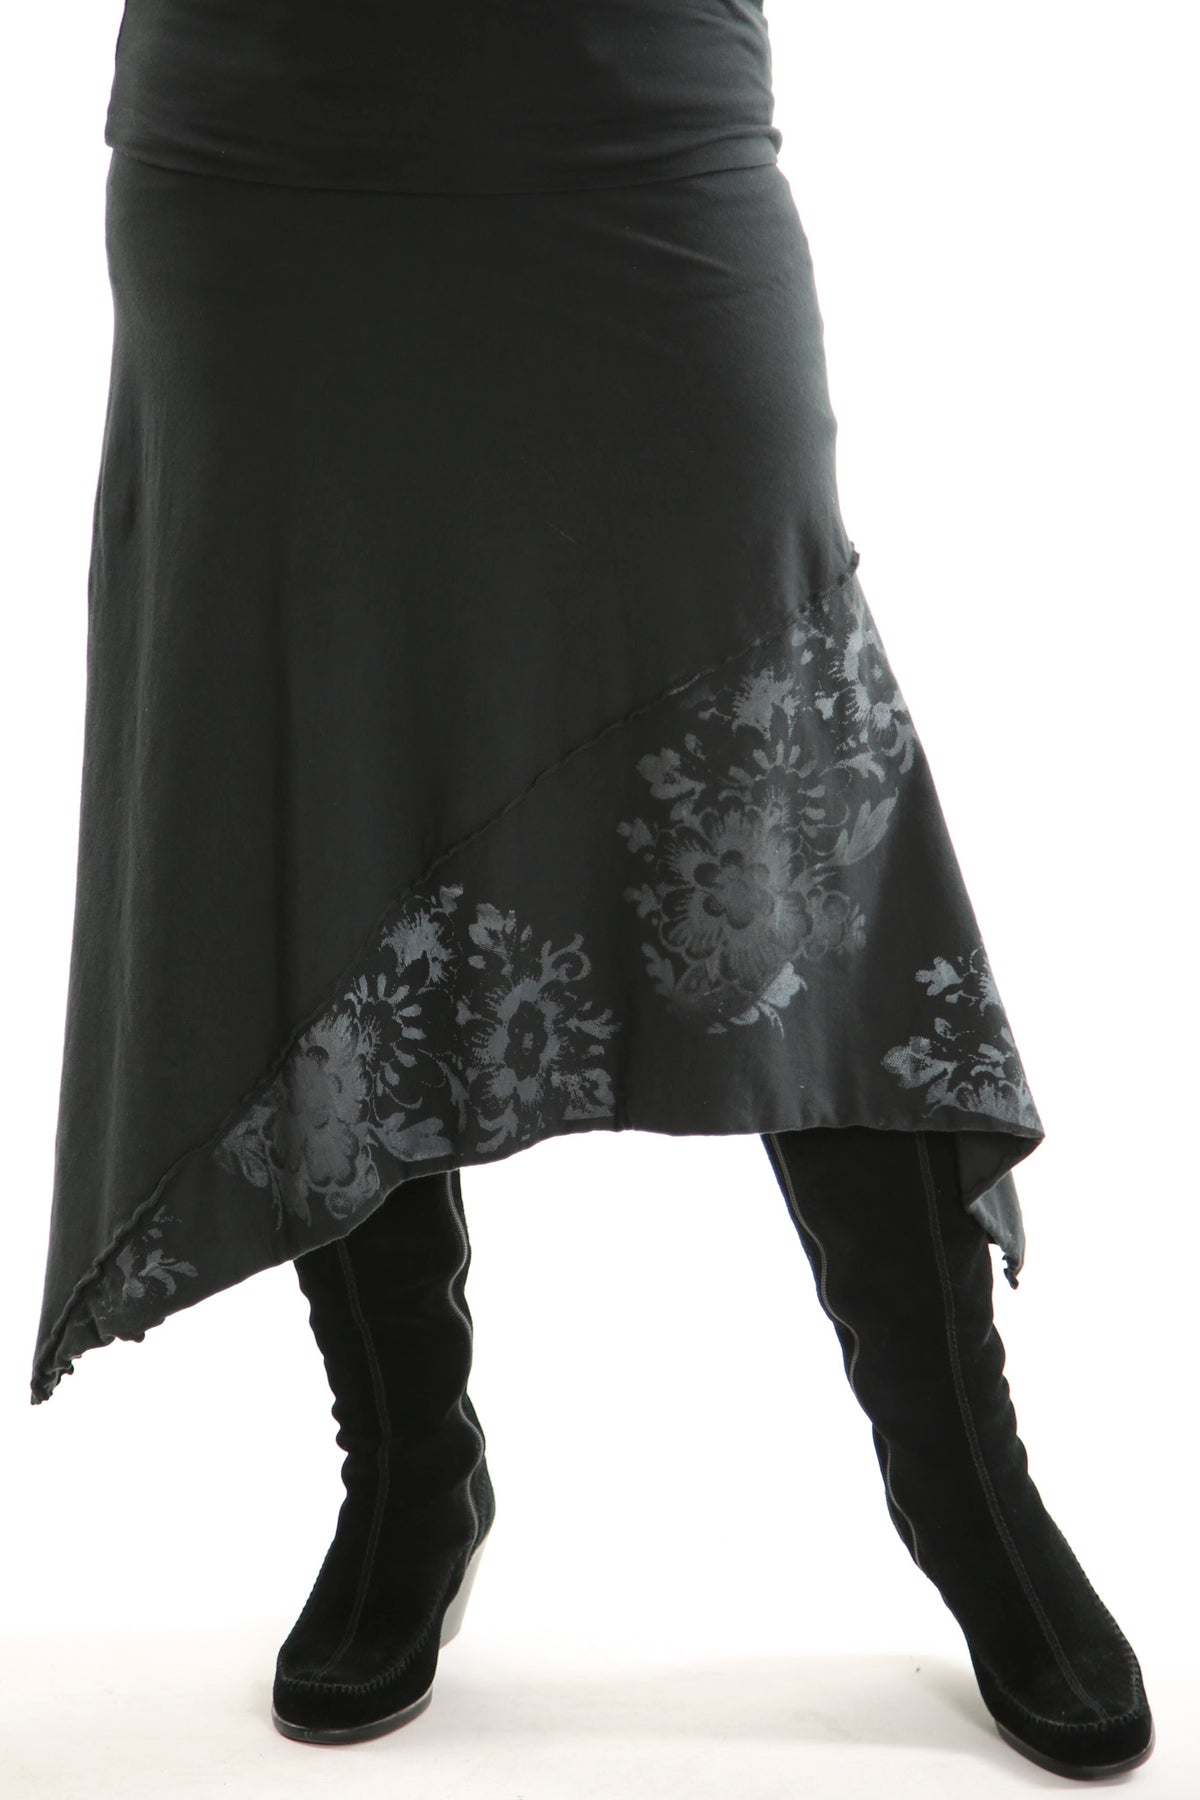 4130 Slant Layer Skirt Black Antique Floral